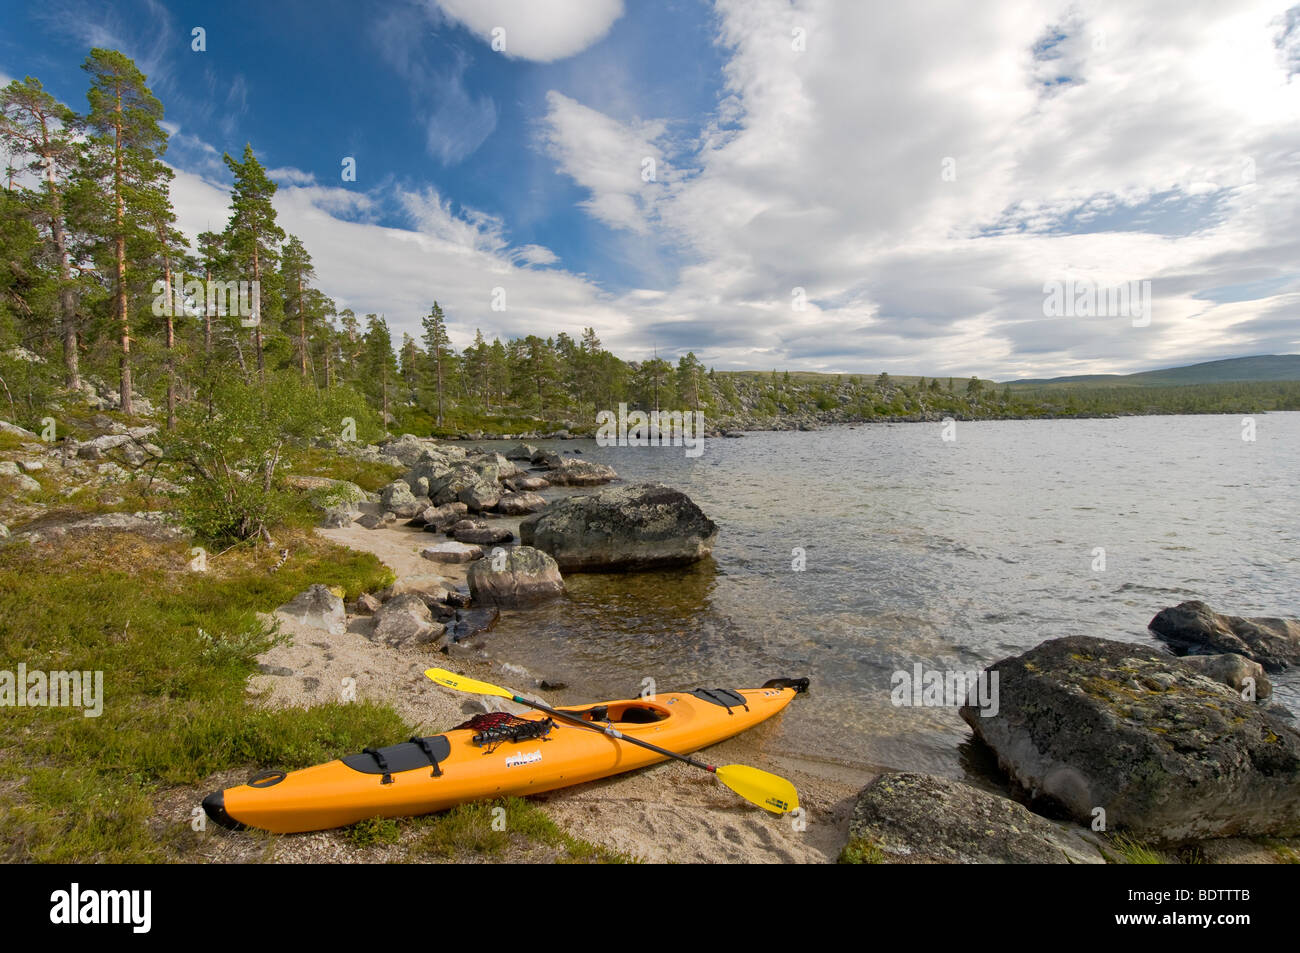 kajak am see rogen, naturreservat rogen, haerjedalen, schweden, kayak at  lake rogen, nature reserve, sweden Stock Photo - Alamy